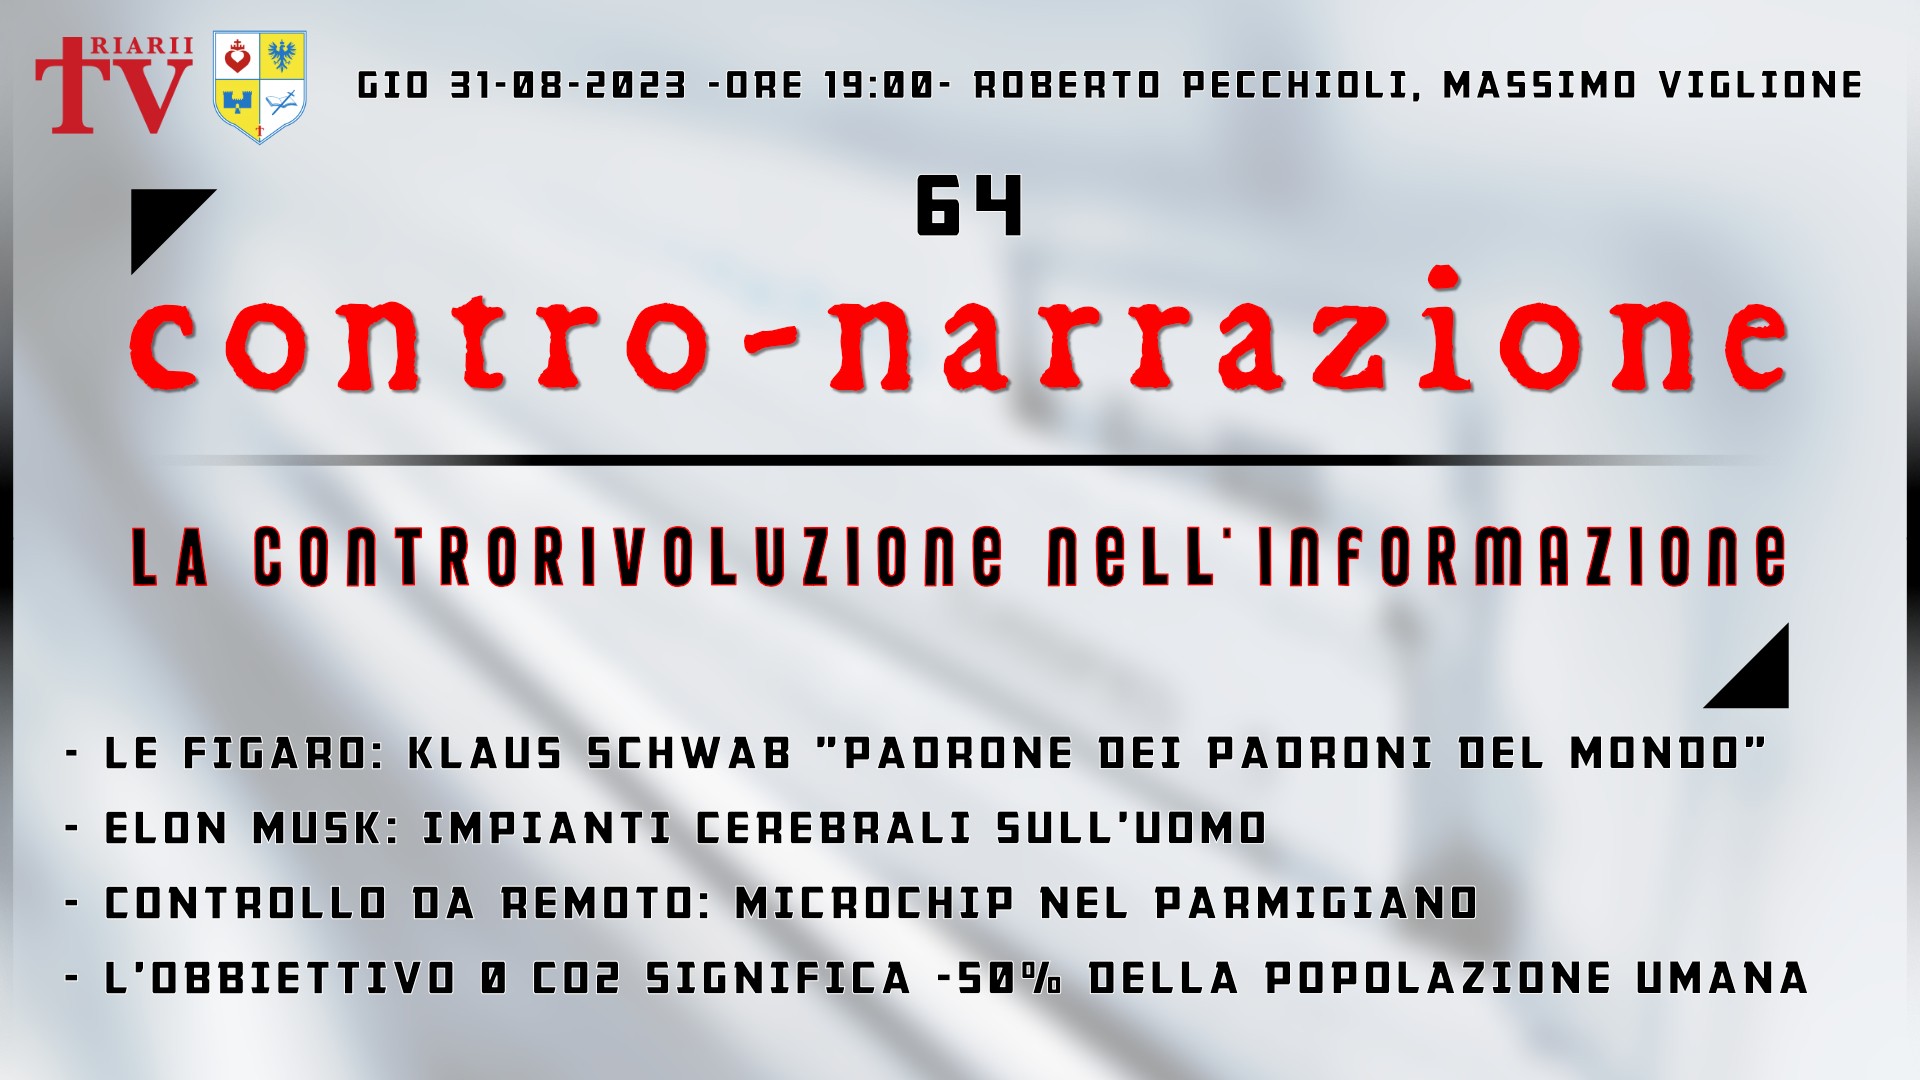 CONTRO-NARRAZIONE NR.64 - GIOV 31 AGOSTO 2023 - Roberto Pecchioli, Massimo Viglione